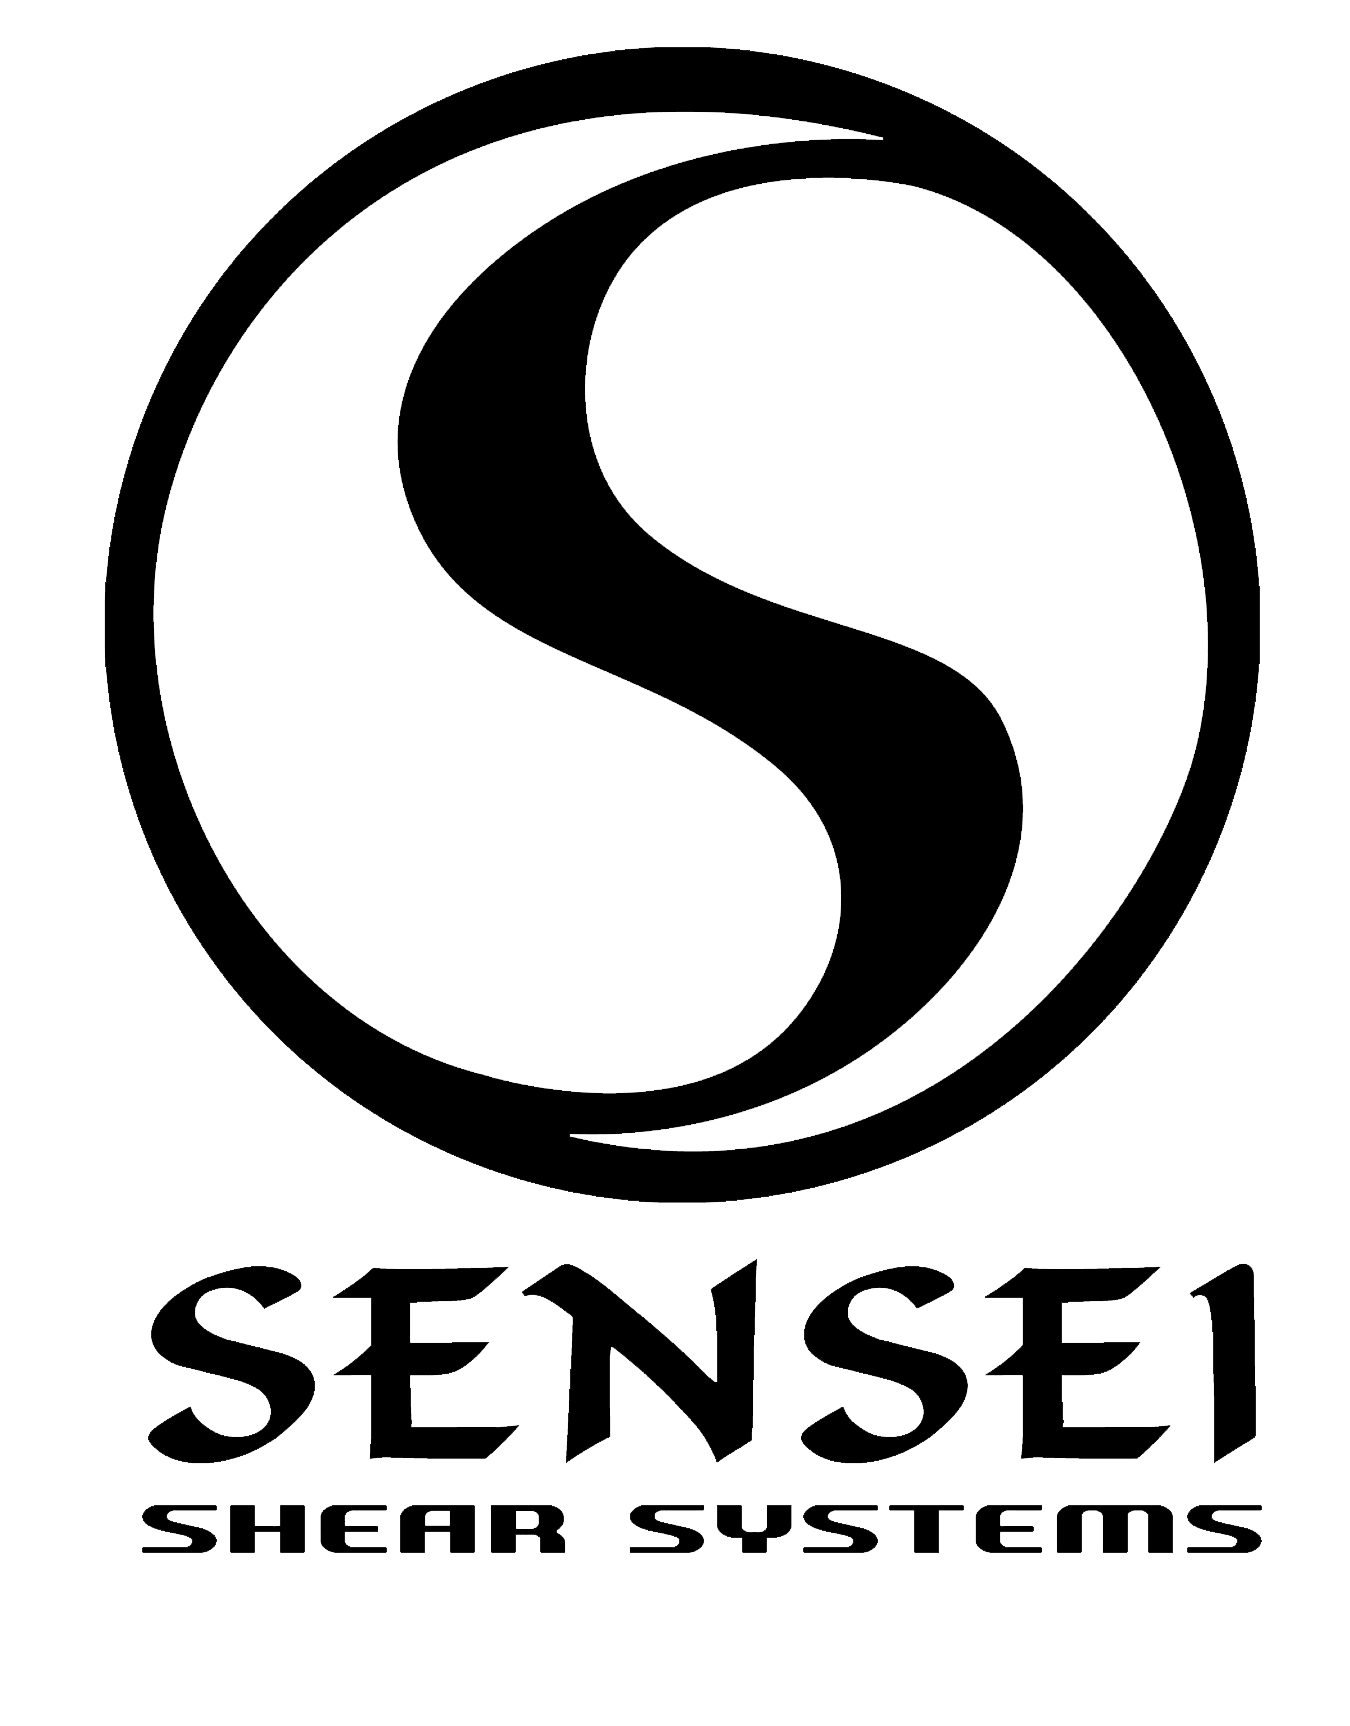 Sensei logo- Sensei GSC RSC Fit Tao swivel crane ergonomic